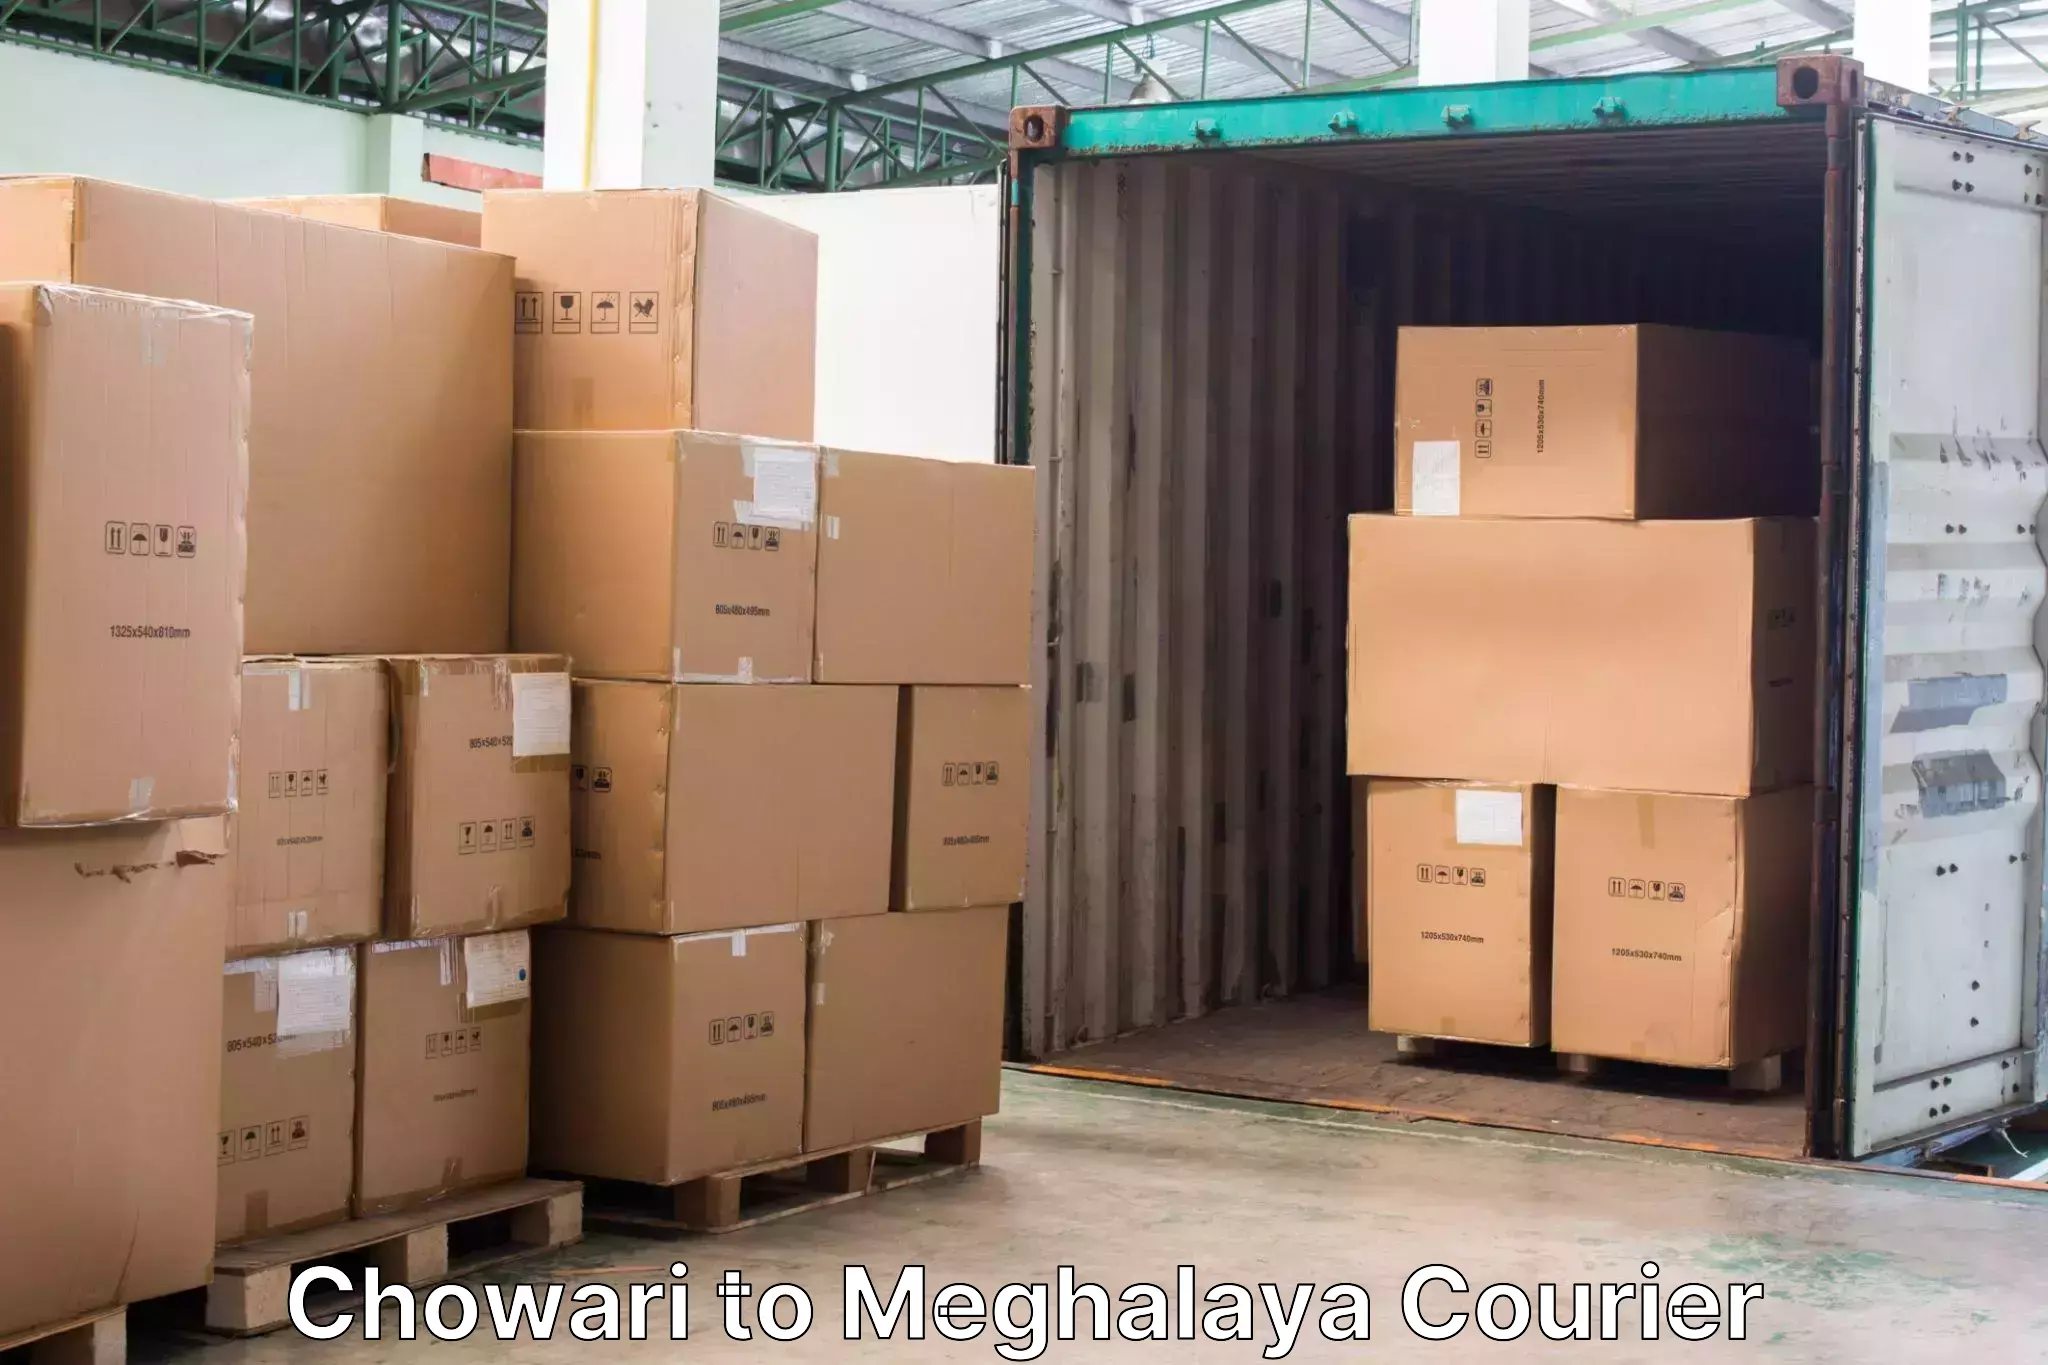 Baggage transport network Chowari to Meghalaya